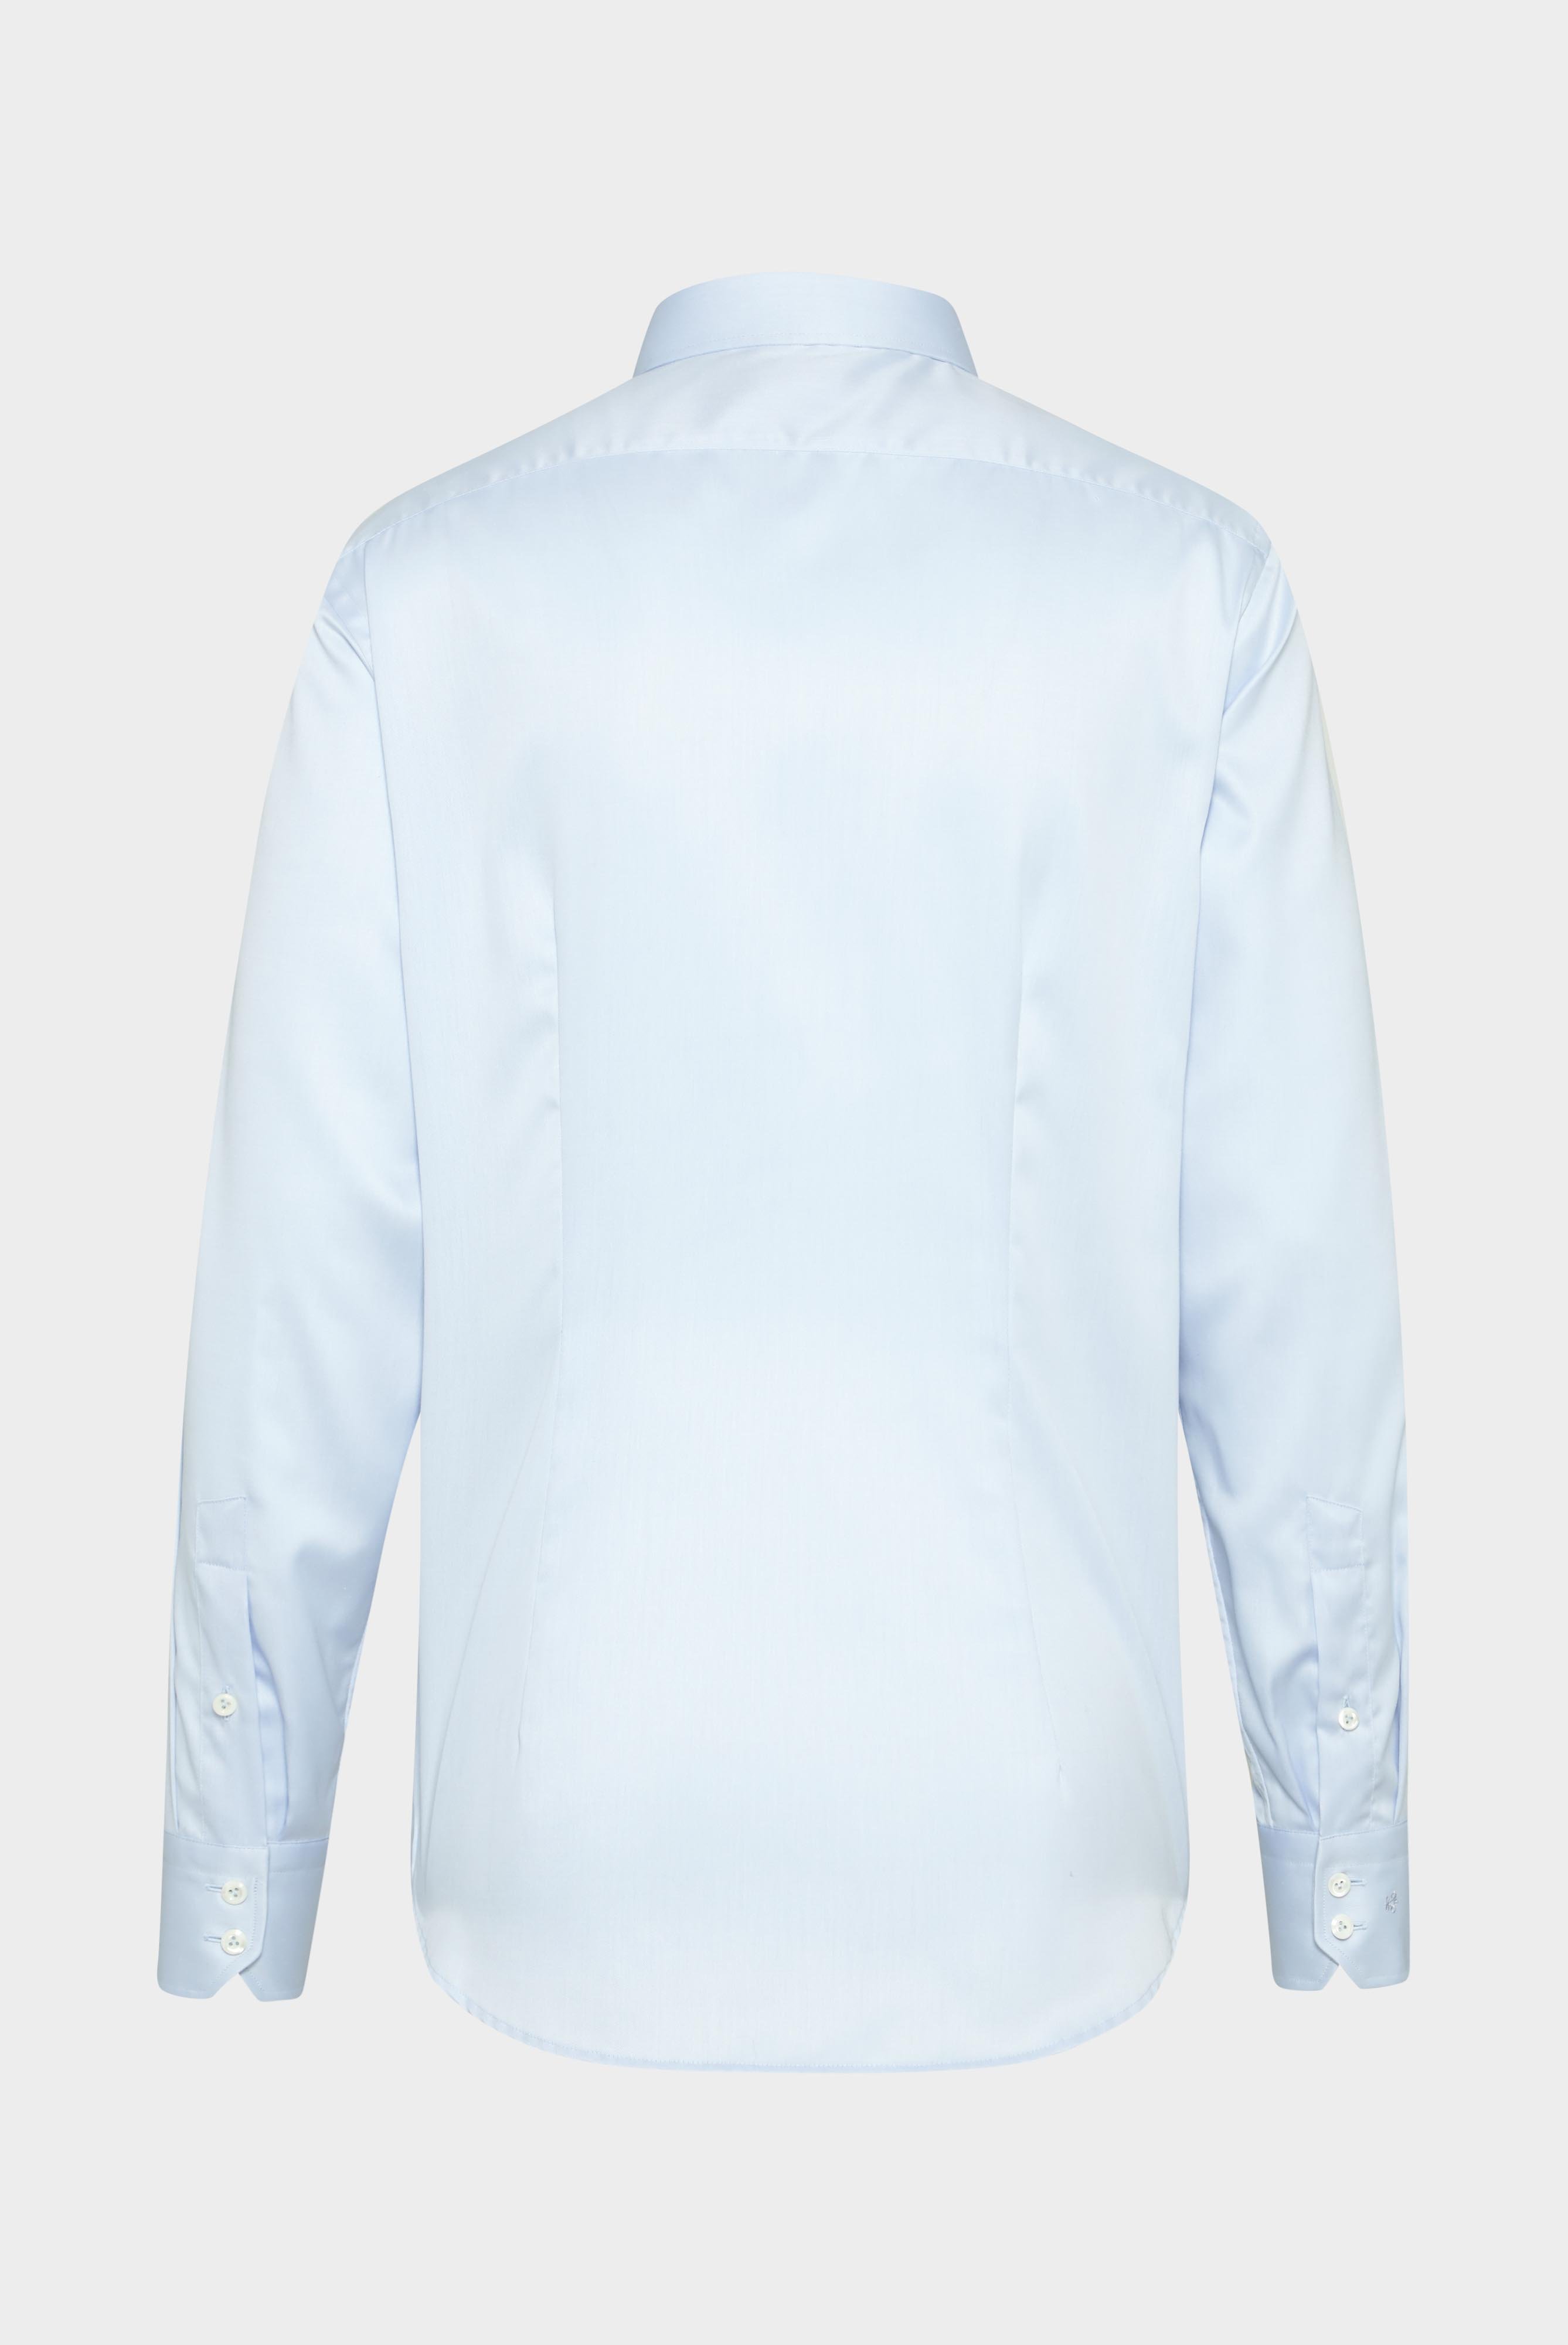 Bügelleichte Hemden+Bügelfreies Twill Hemd Tailor Fit+20.2020.BQ.132241.720.41